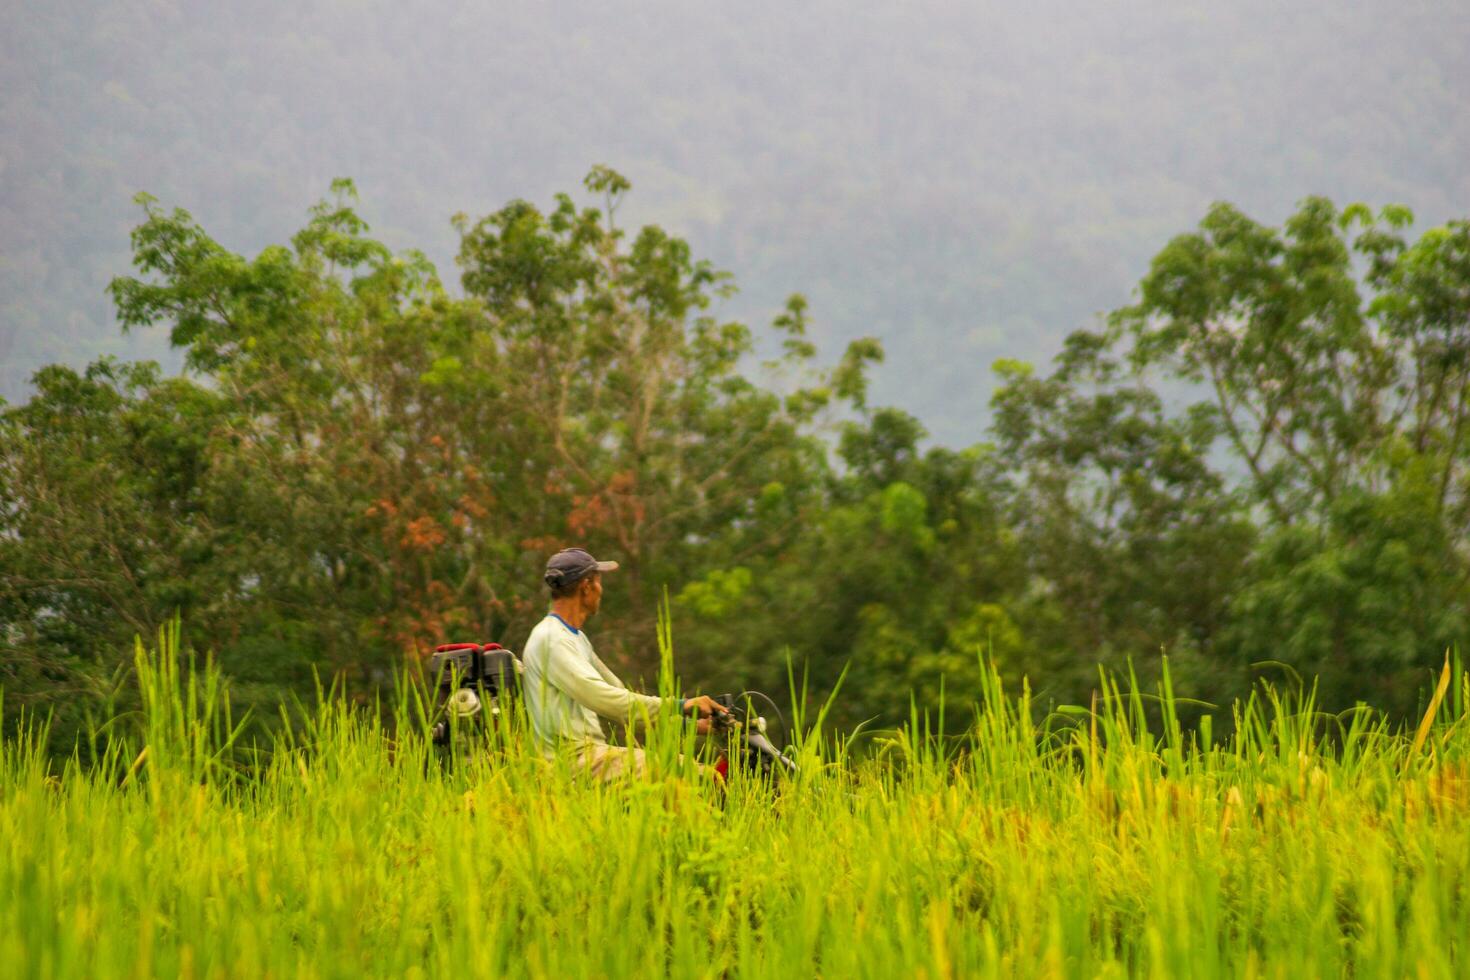 bengkulu, Indonésia, 2023 - Vila vida com agricultores trabalhando dentro a arroz Campos foto